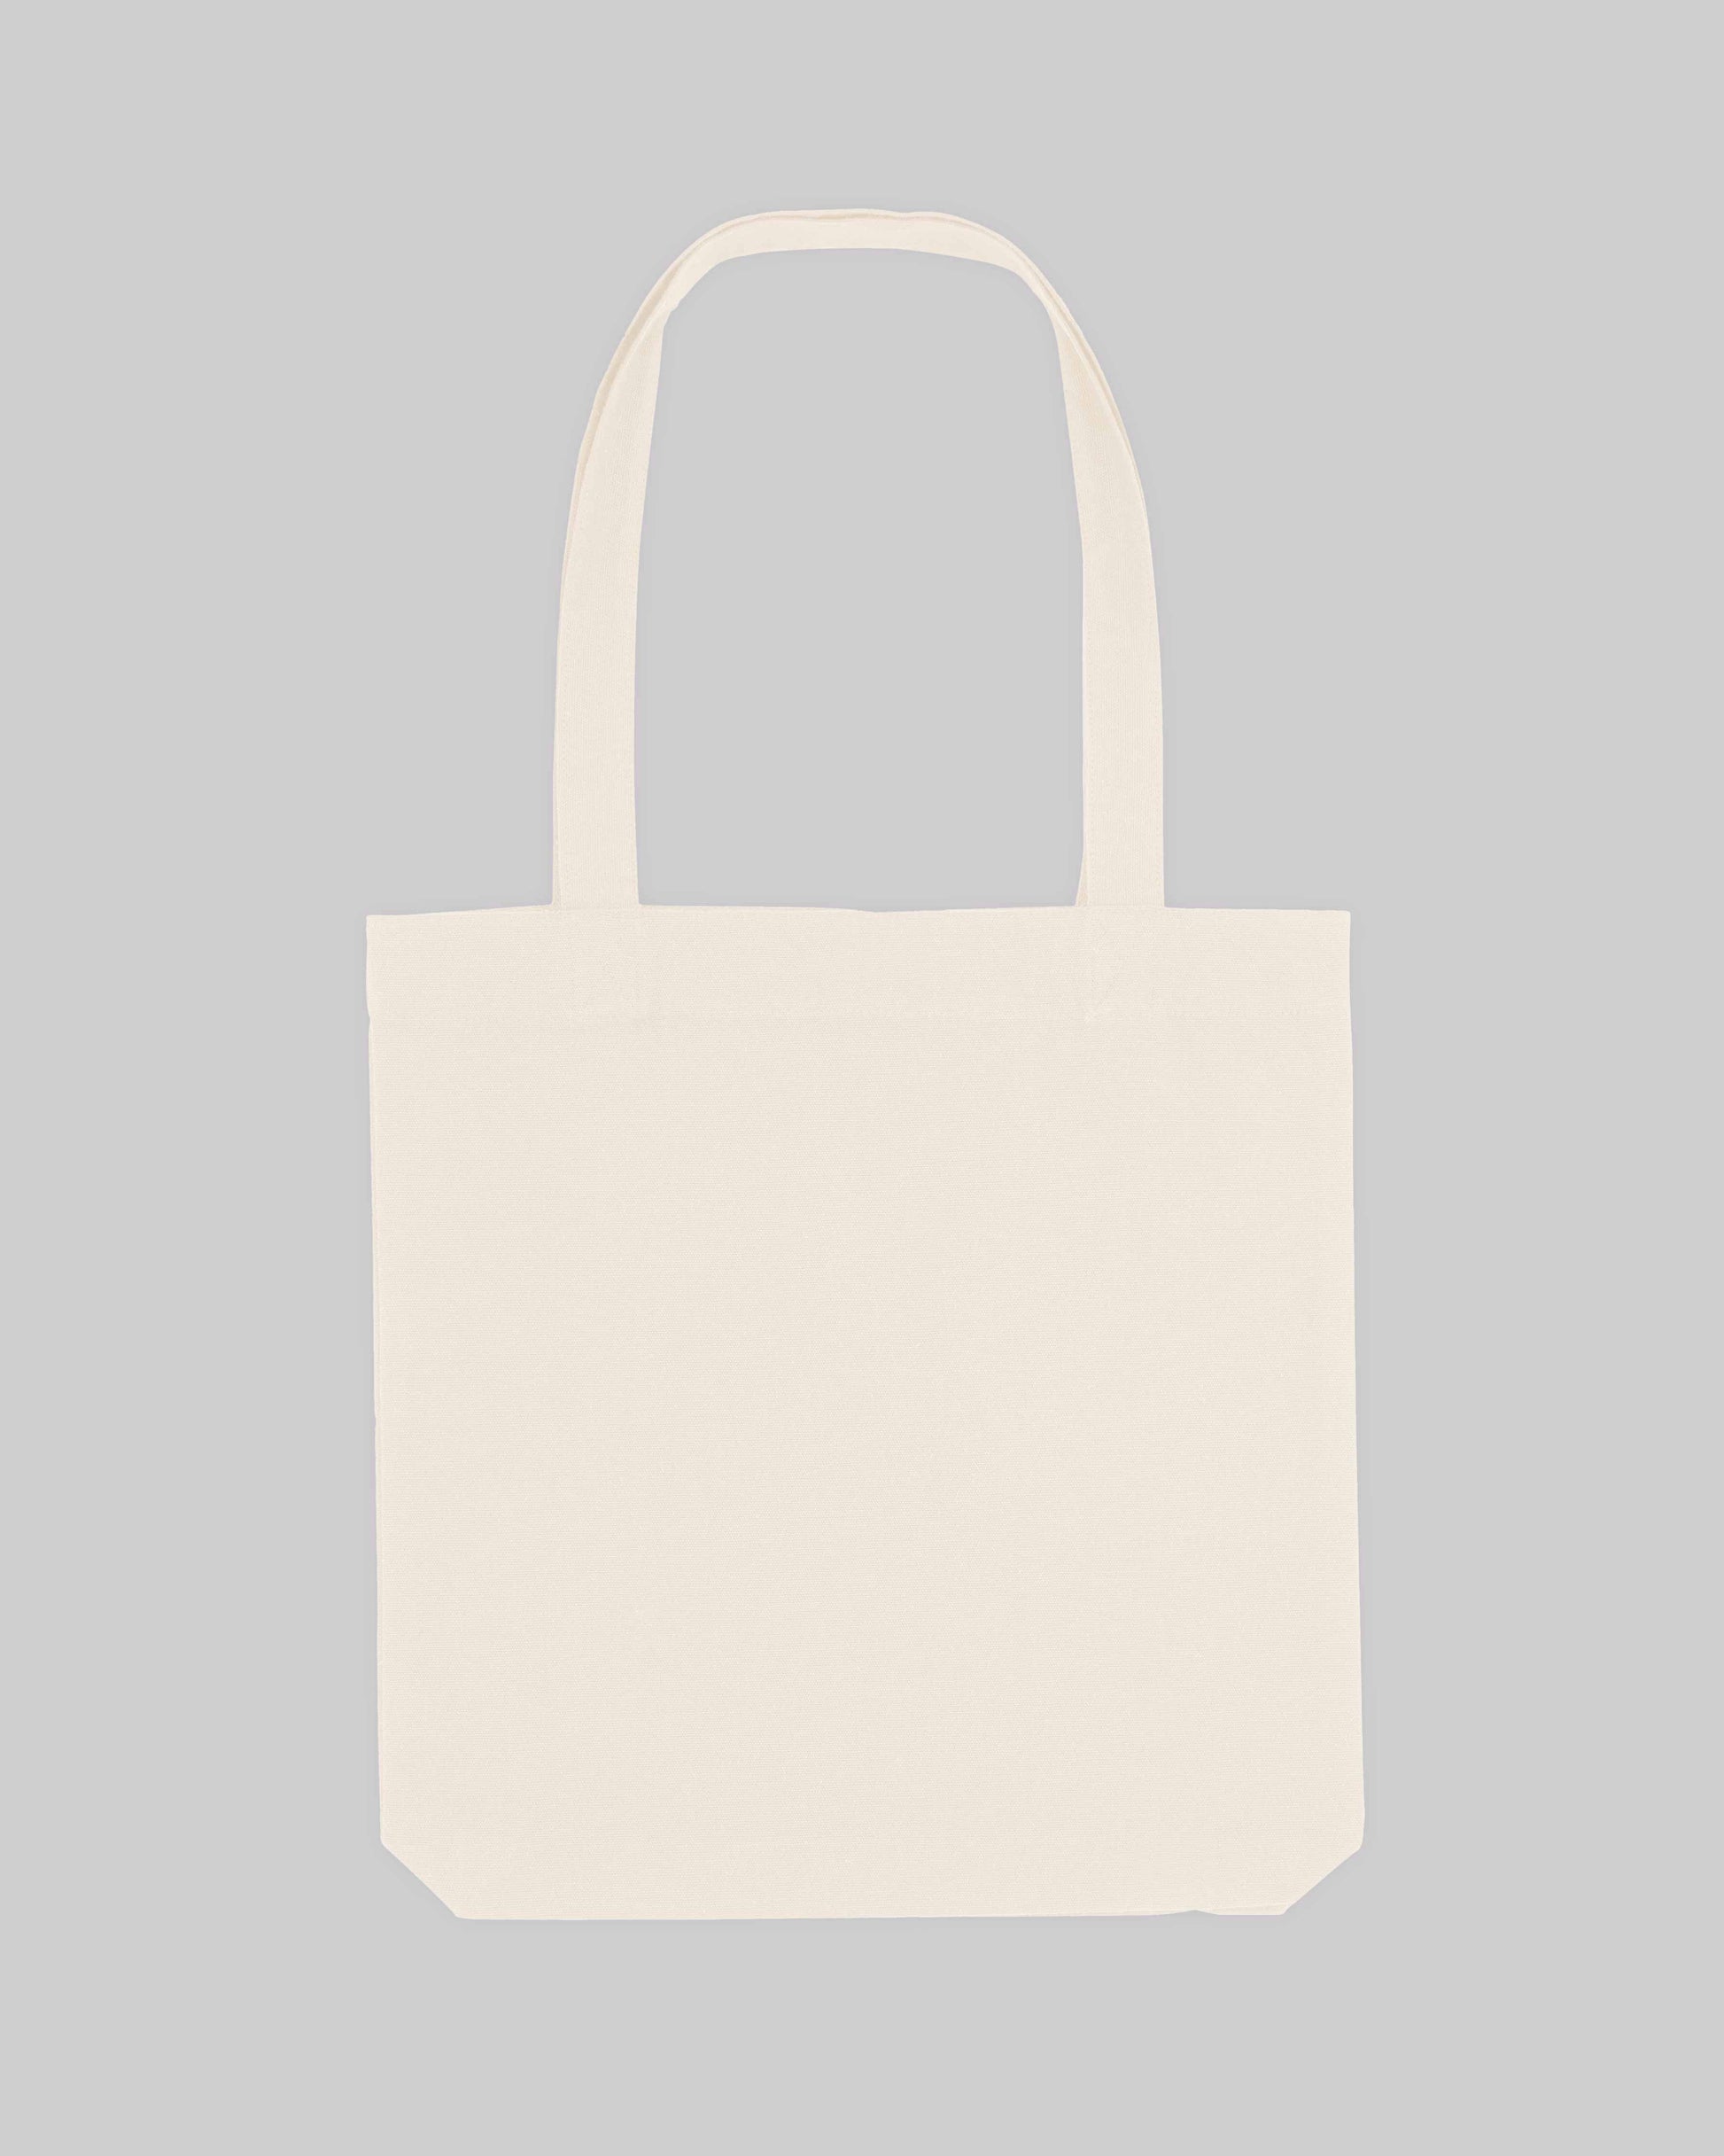 EINHORST® Stofftasche in der Farbe "Natural" mit dem Motiv "Blumenstrauß", Bild von Stofftasche von hinten